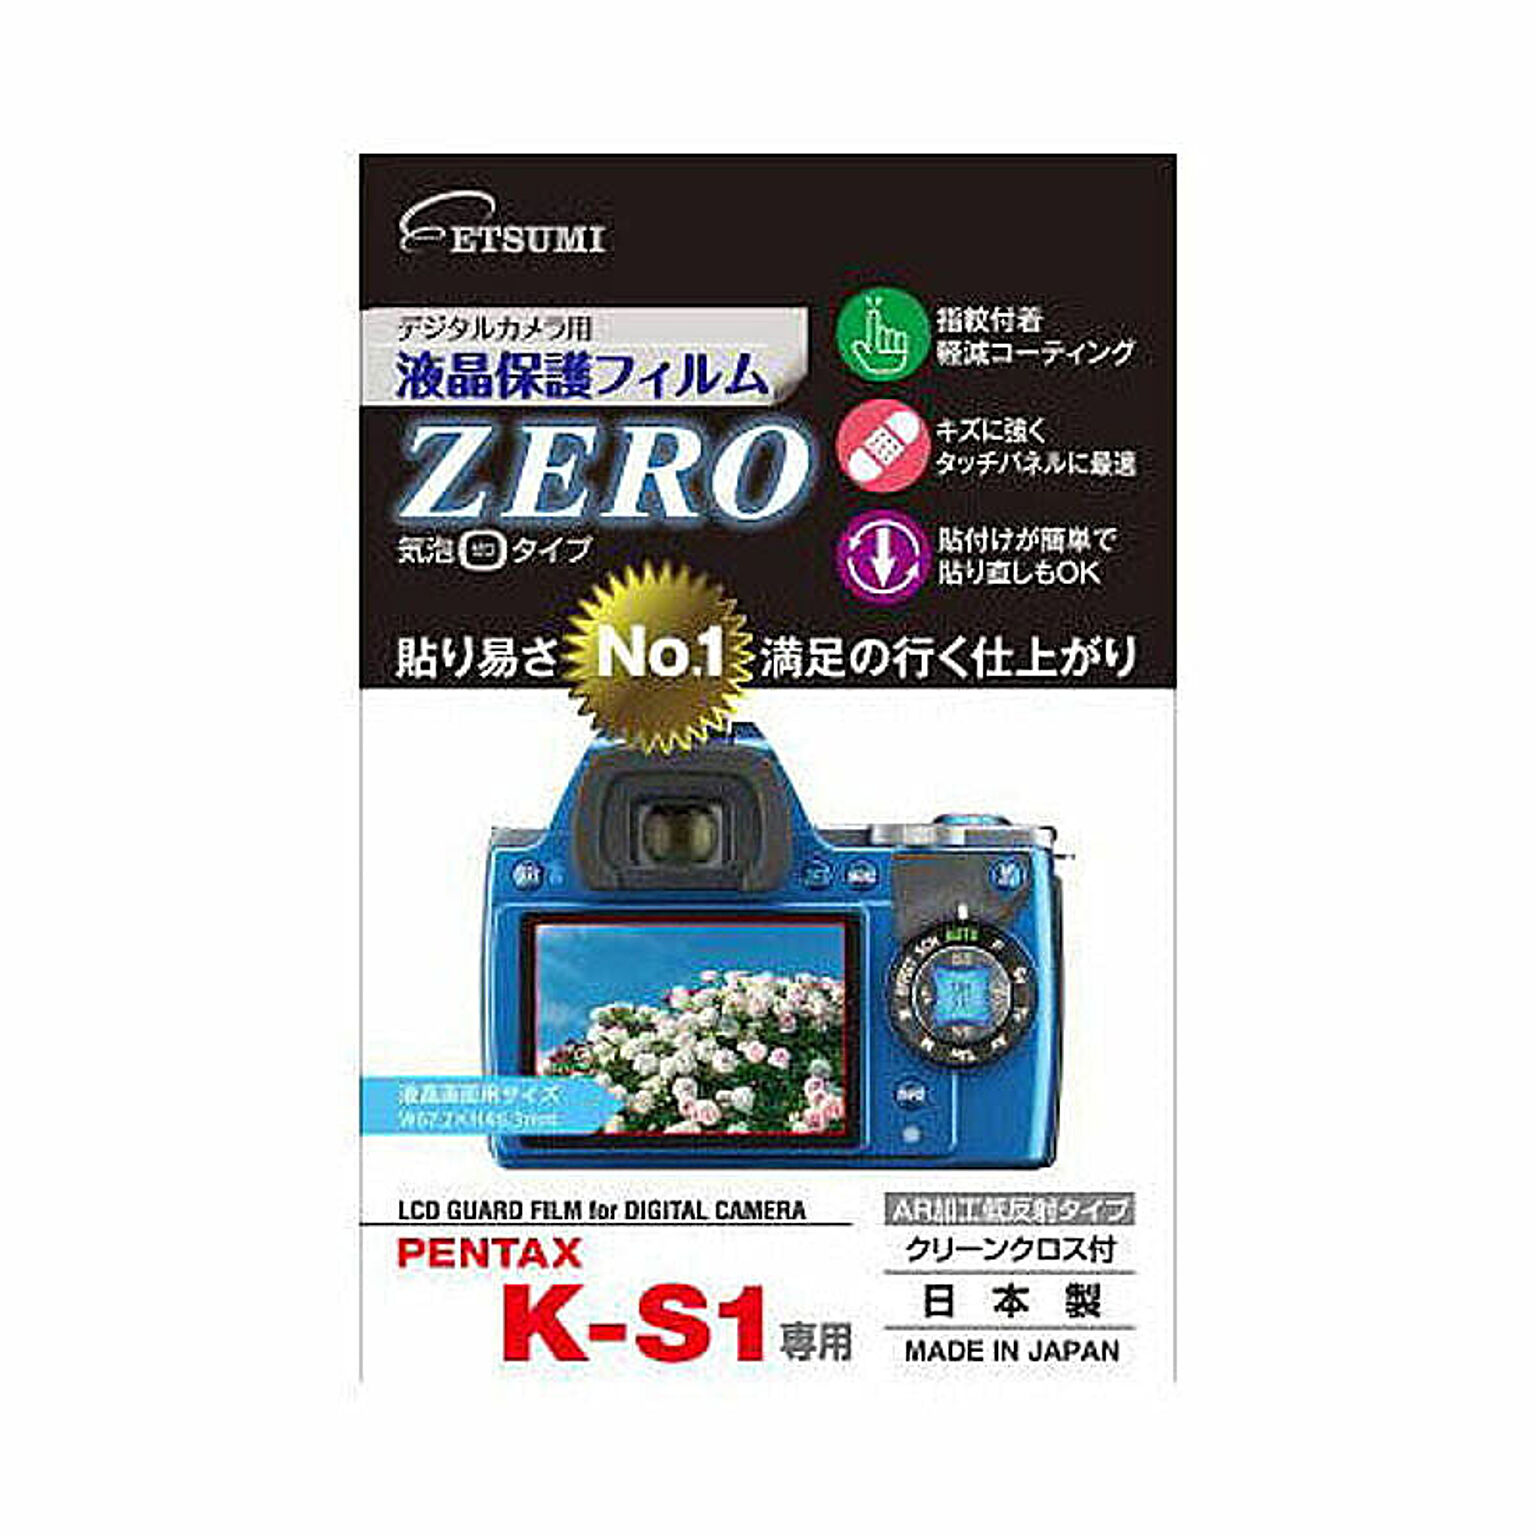 エツミ デジタルカメラ用液晶保護フィルムZERO PENTAX K-S1専用 E-7330 管理No. 4975981733093